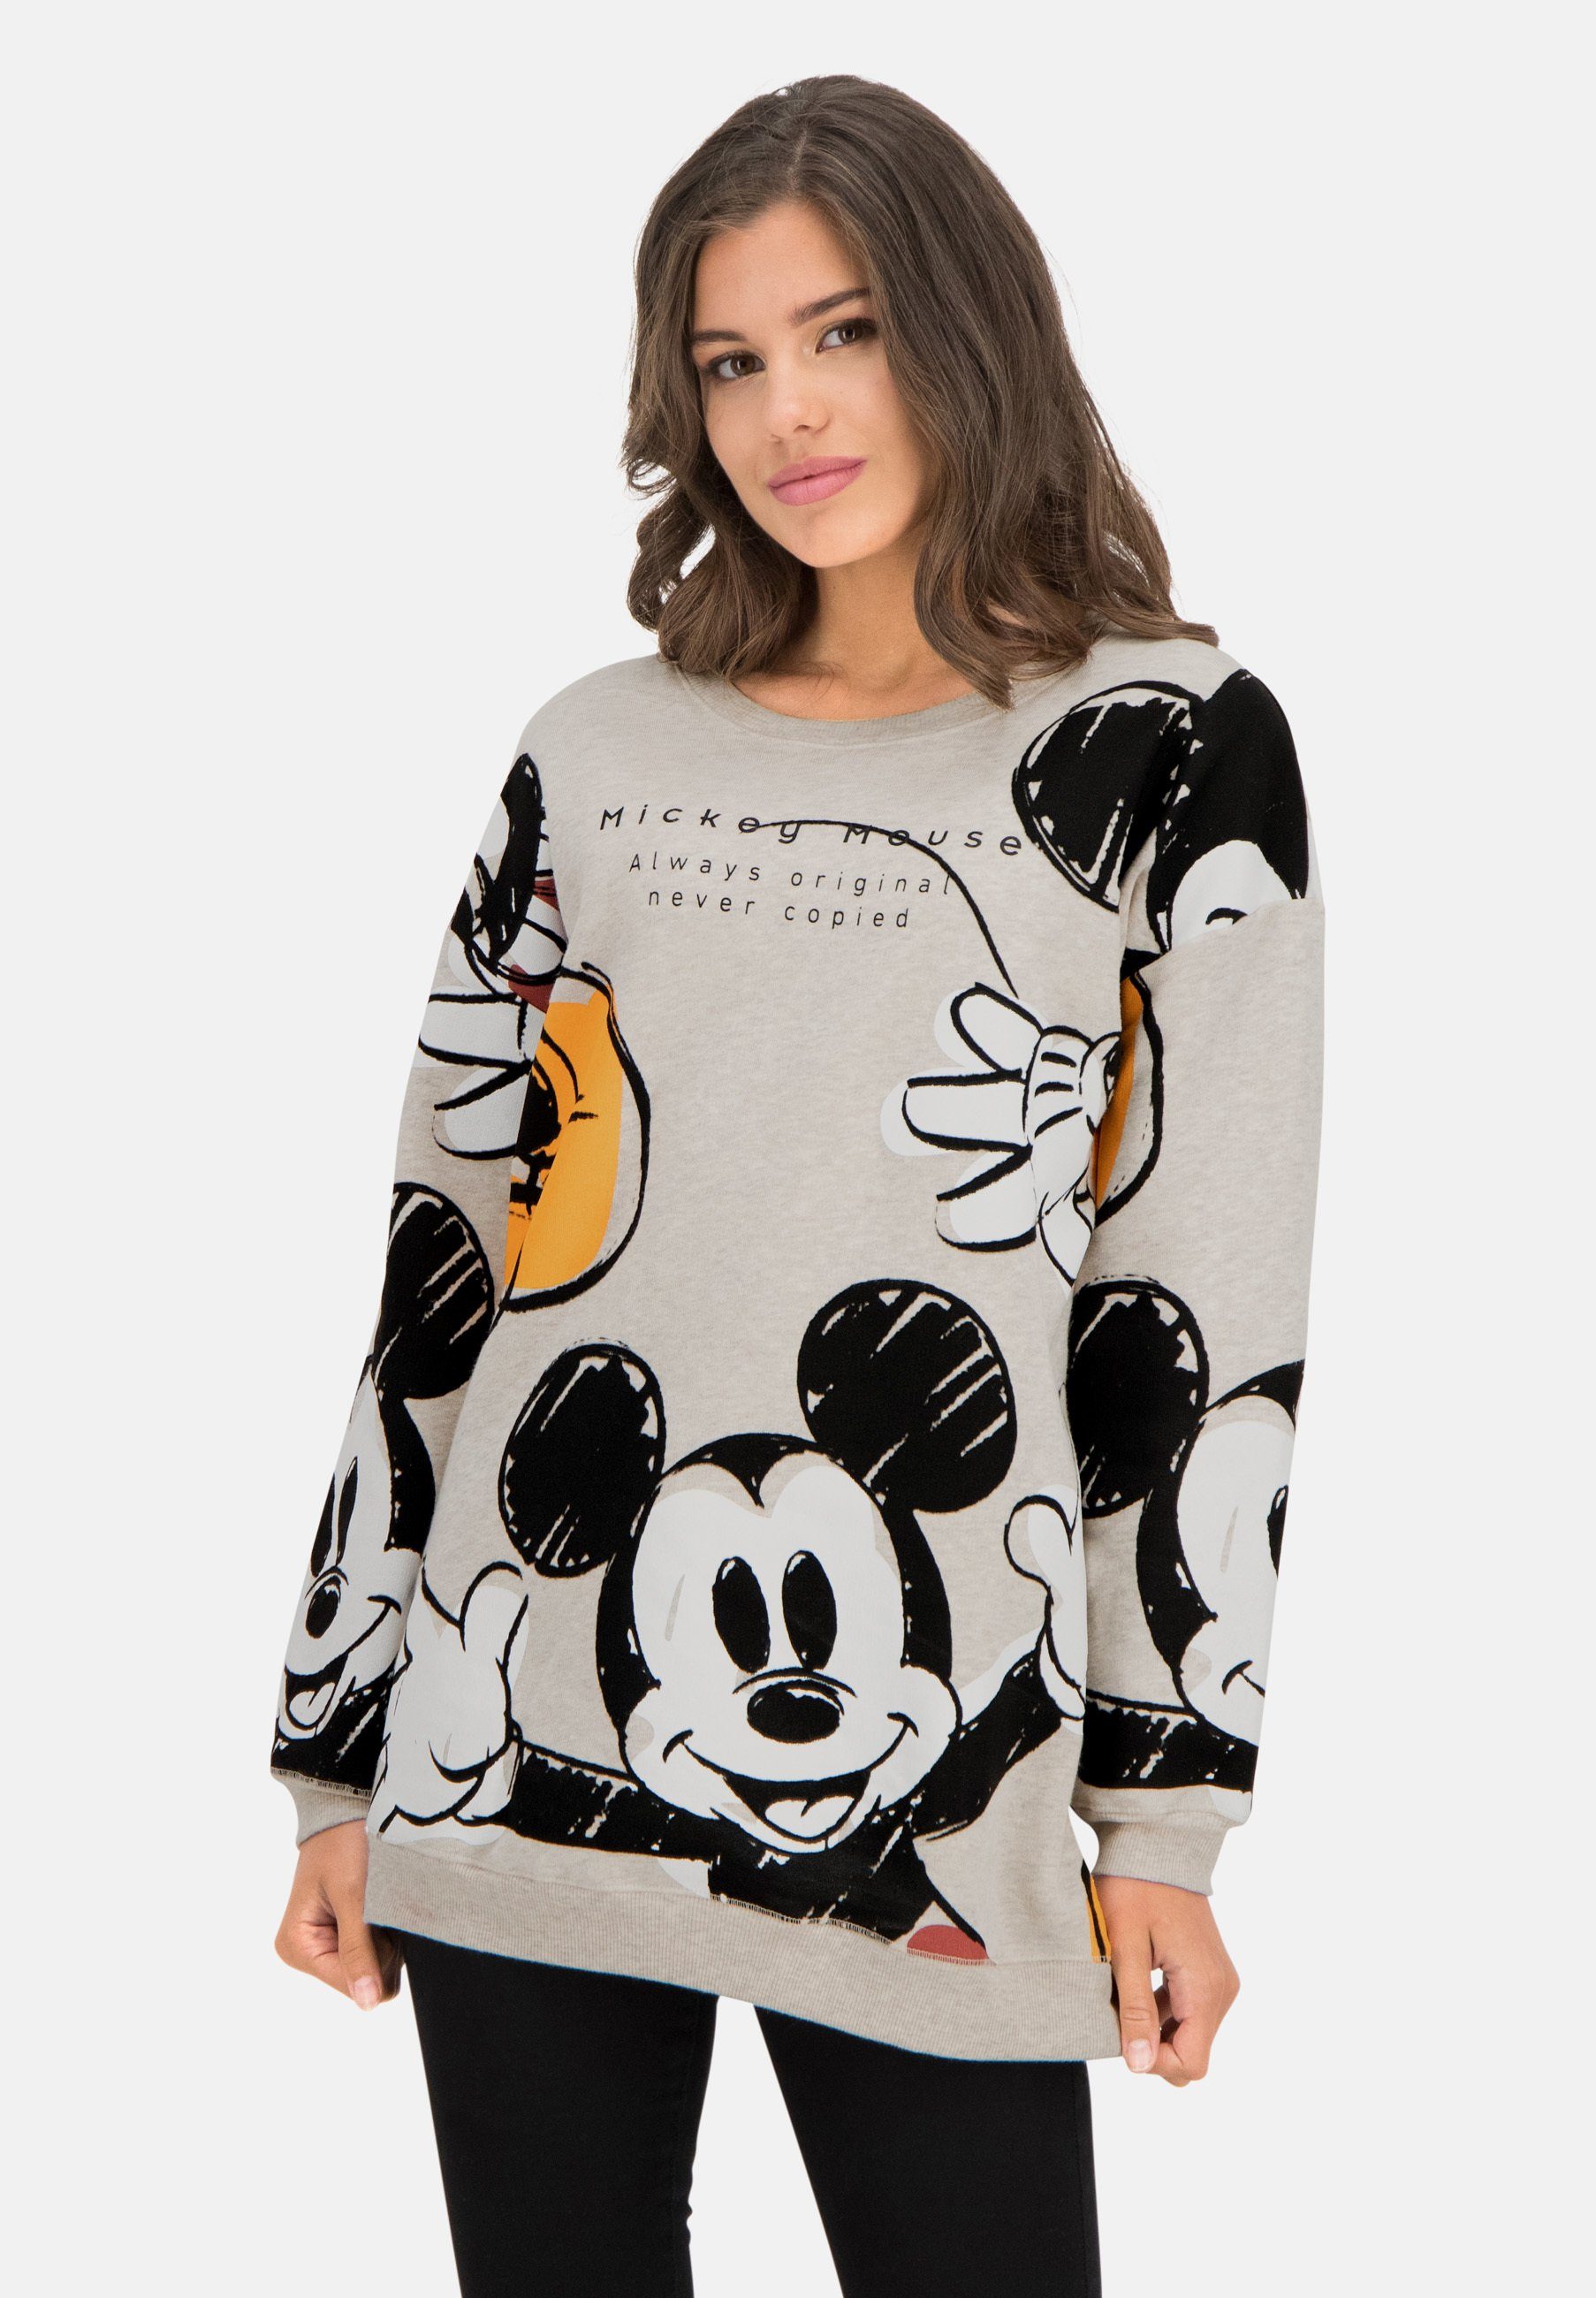 Frogbox Sweatshirt mit Mickey Mouse, Mit Rundhalsausschnitt